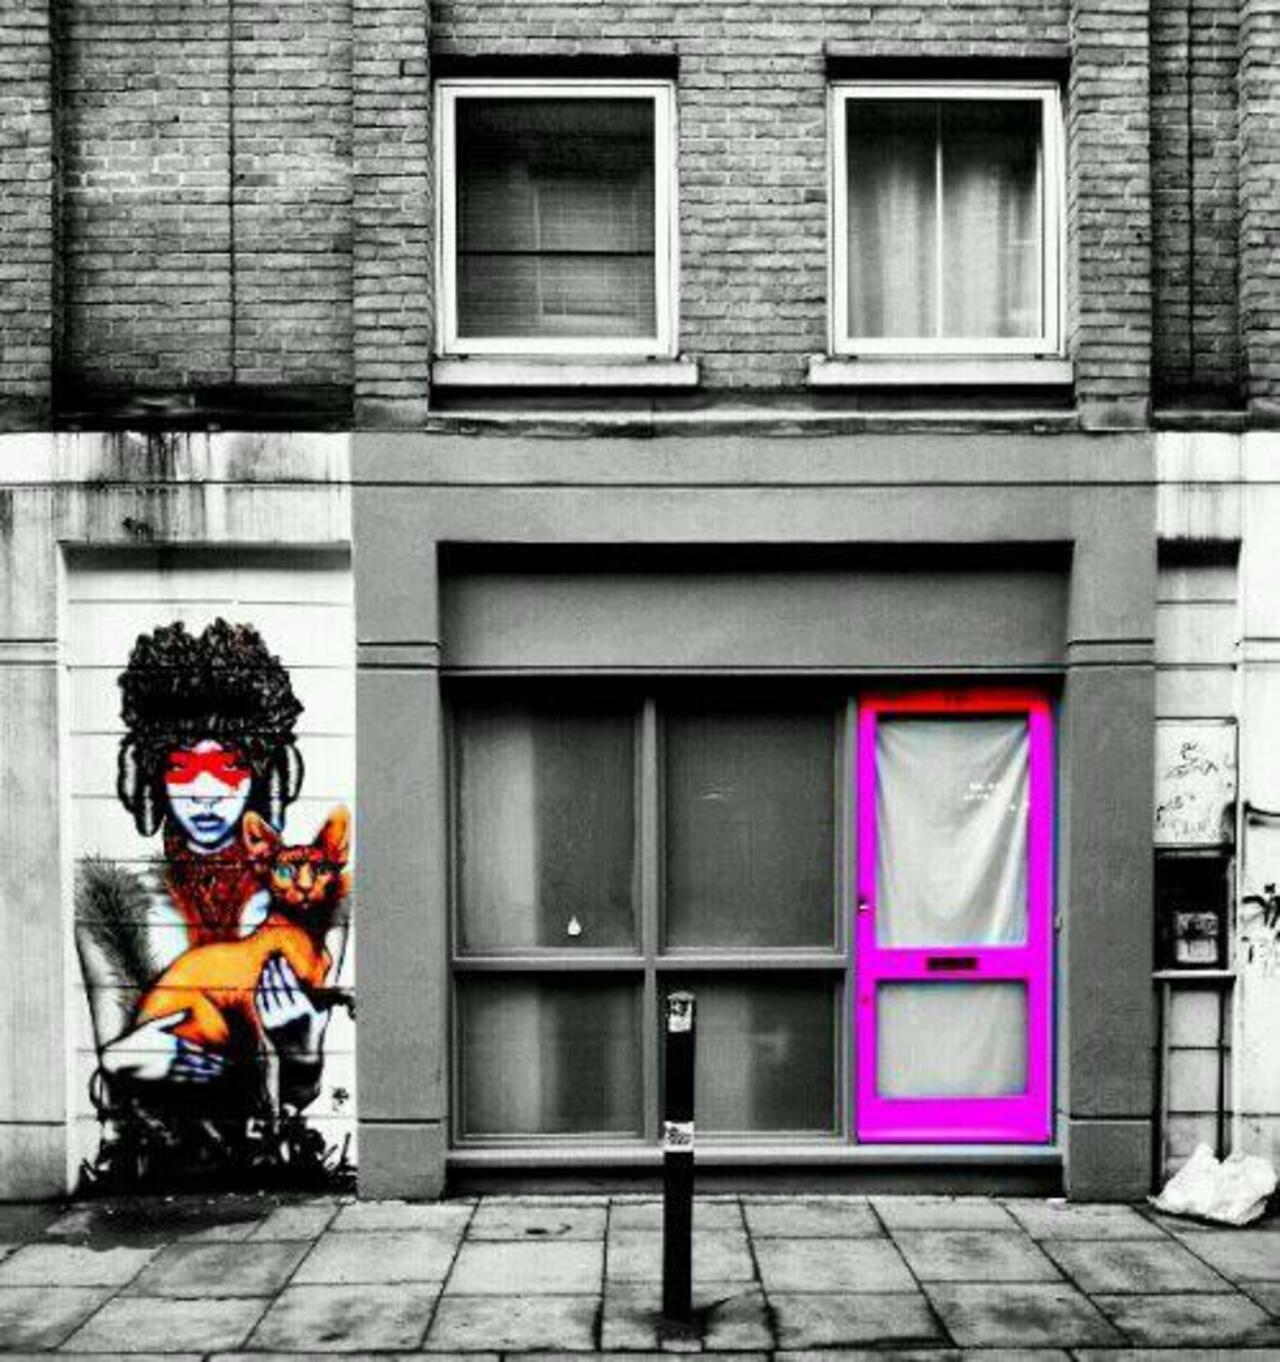 Finbarr Dacc 
Cheshire Street, London

#streetart #art #graffiti http://t.co/Ewxzg1BAj3